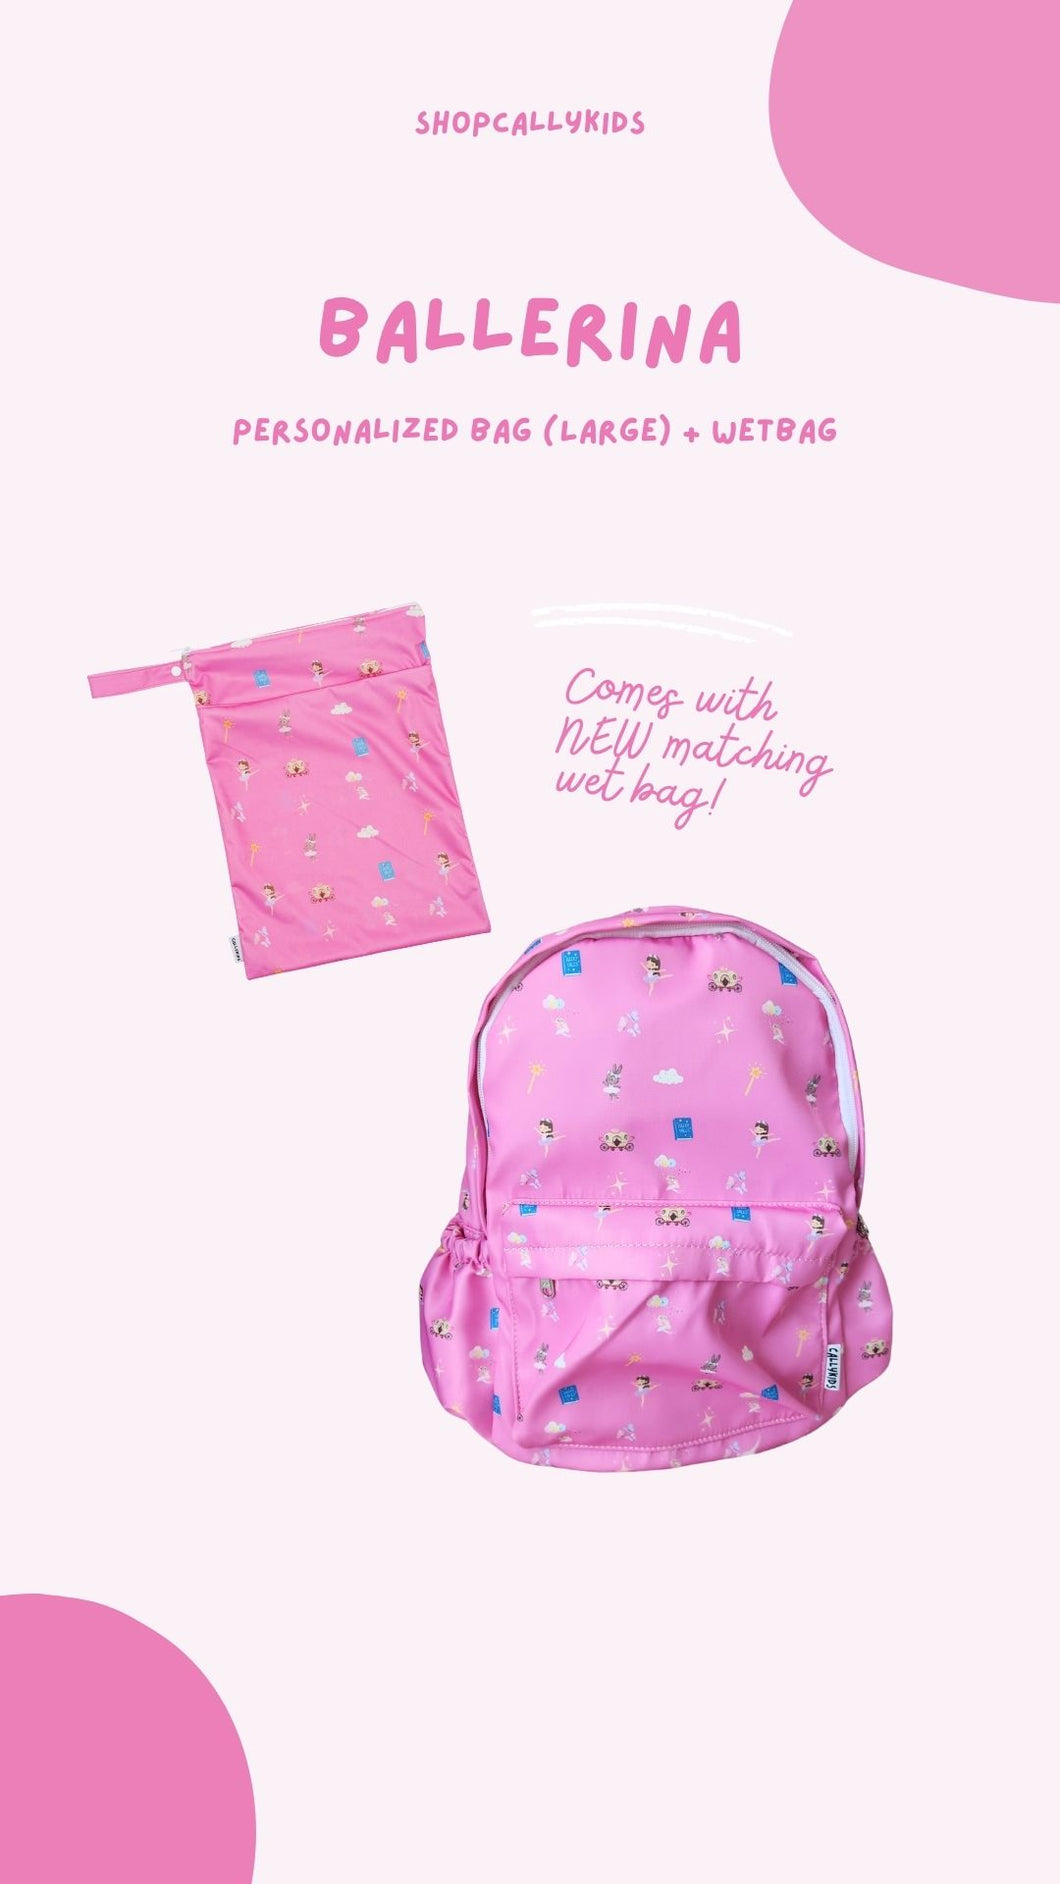 [BUNDLE] Ballerina Wet Bag + Personalized Bag (Large)